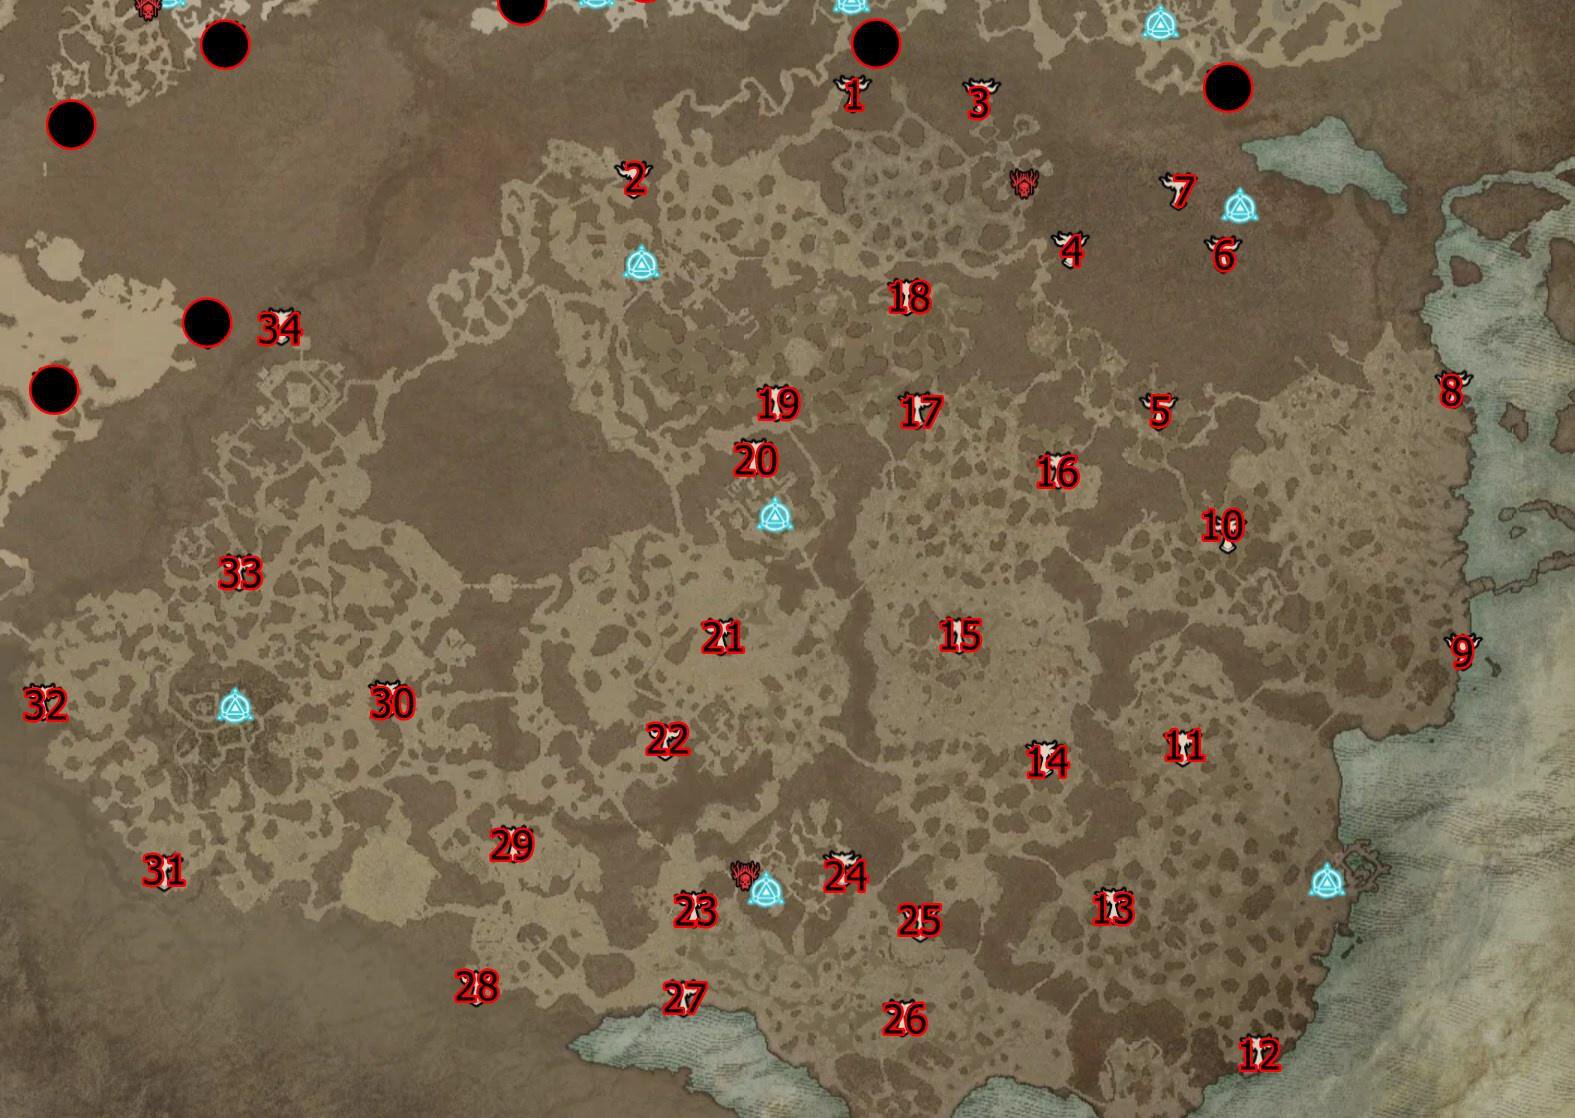 Diablo 4: де знайти всі вівтарі Ліліт? Карта з точним розташуванням